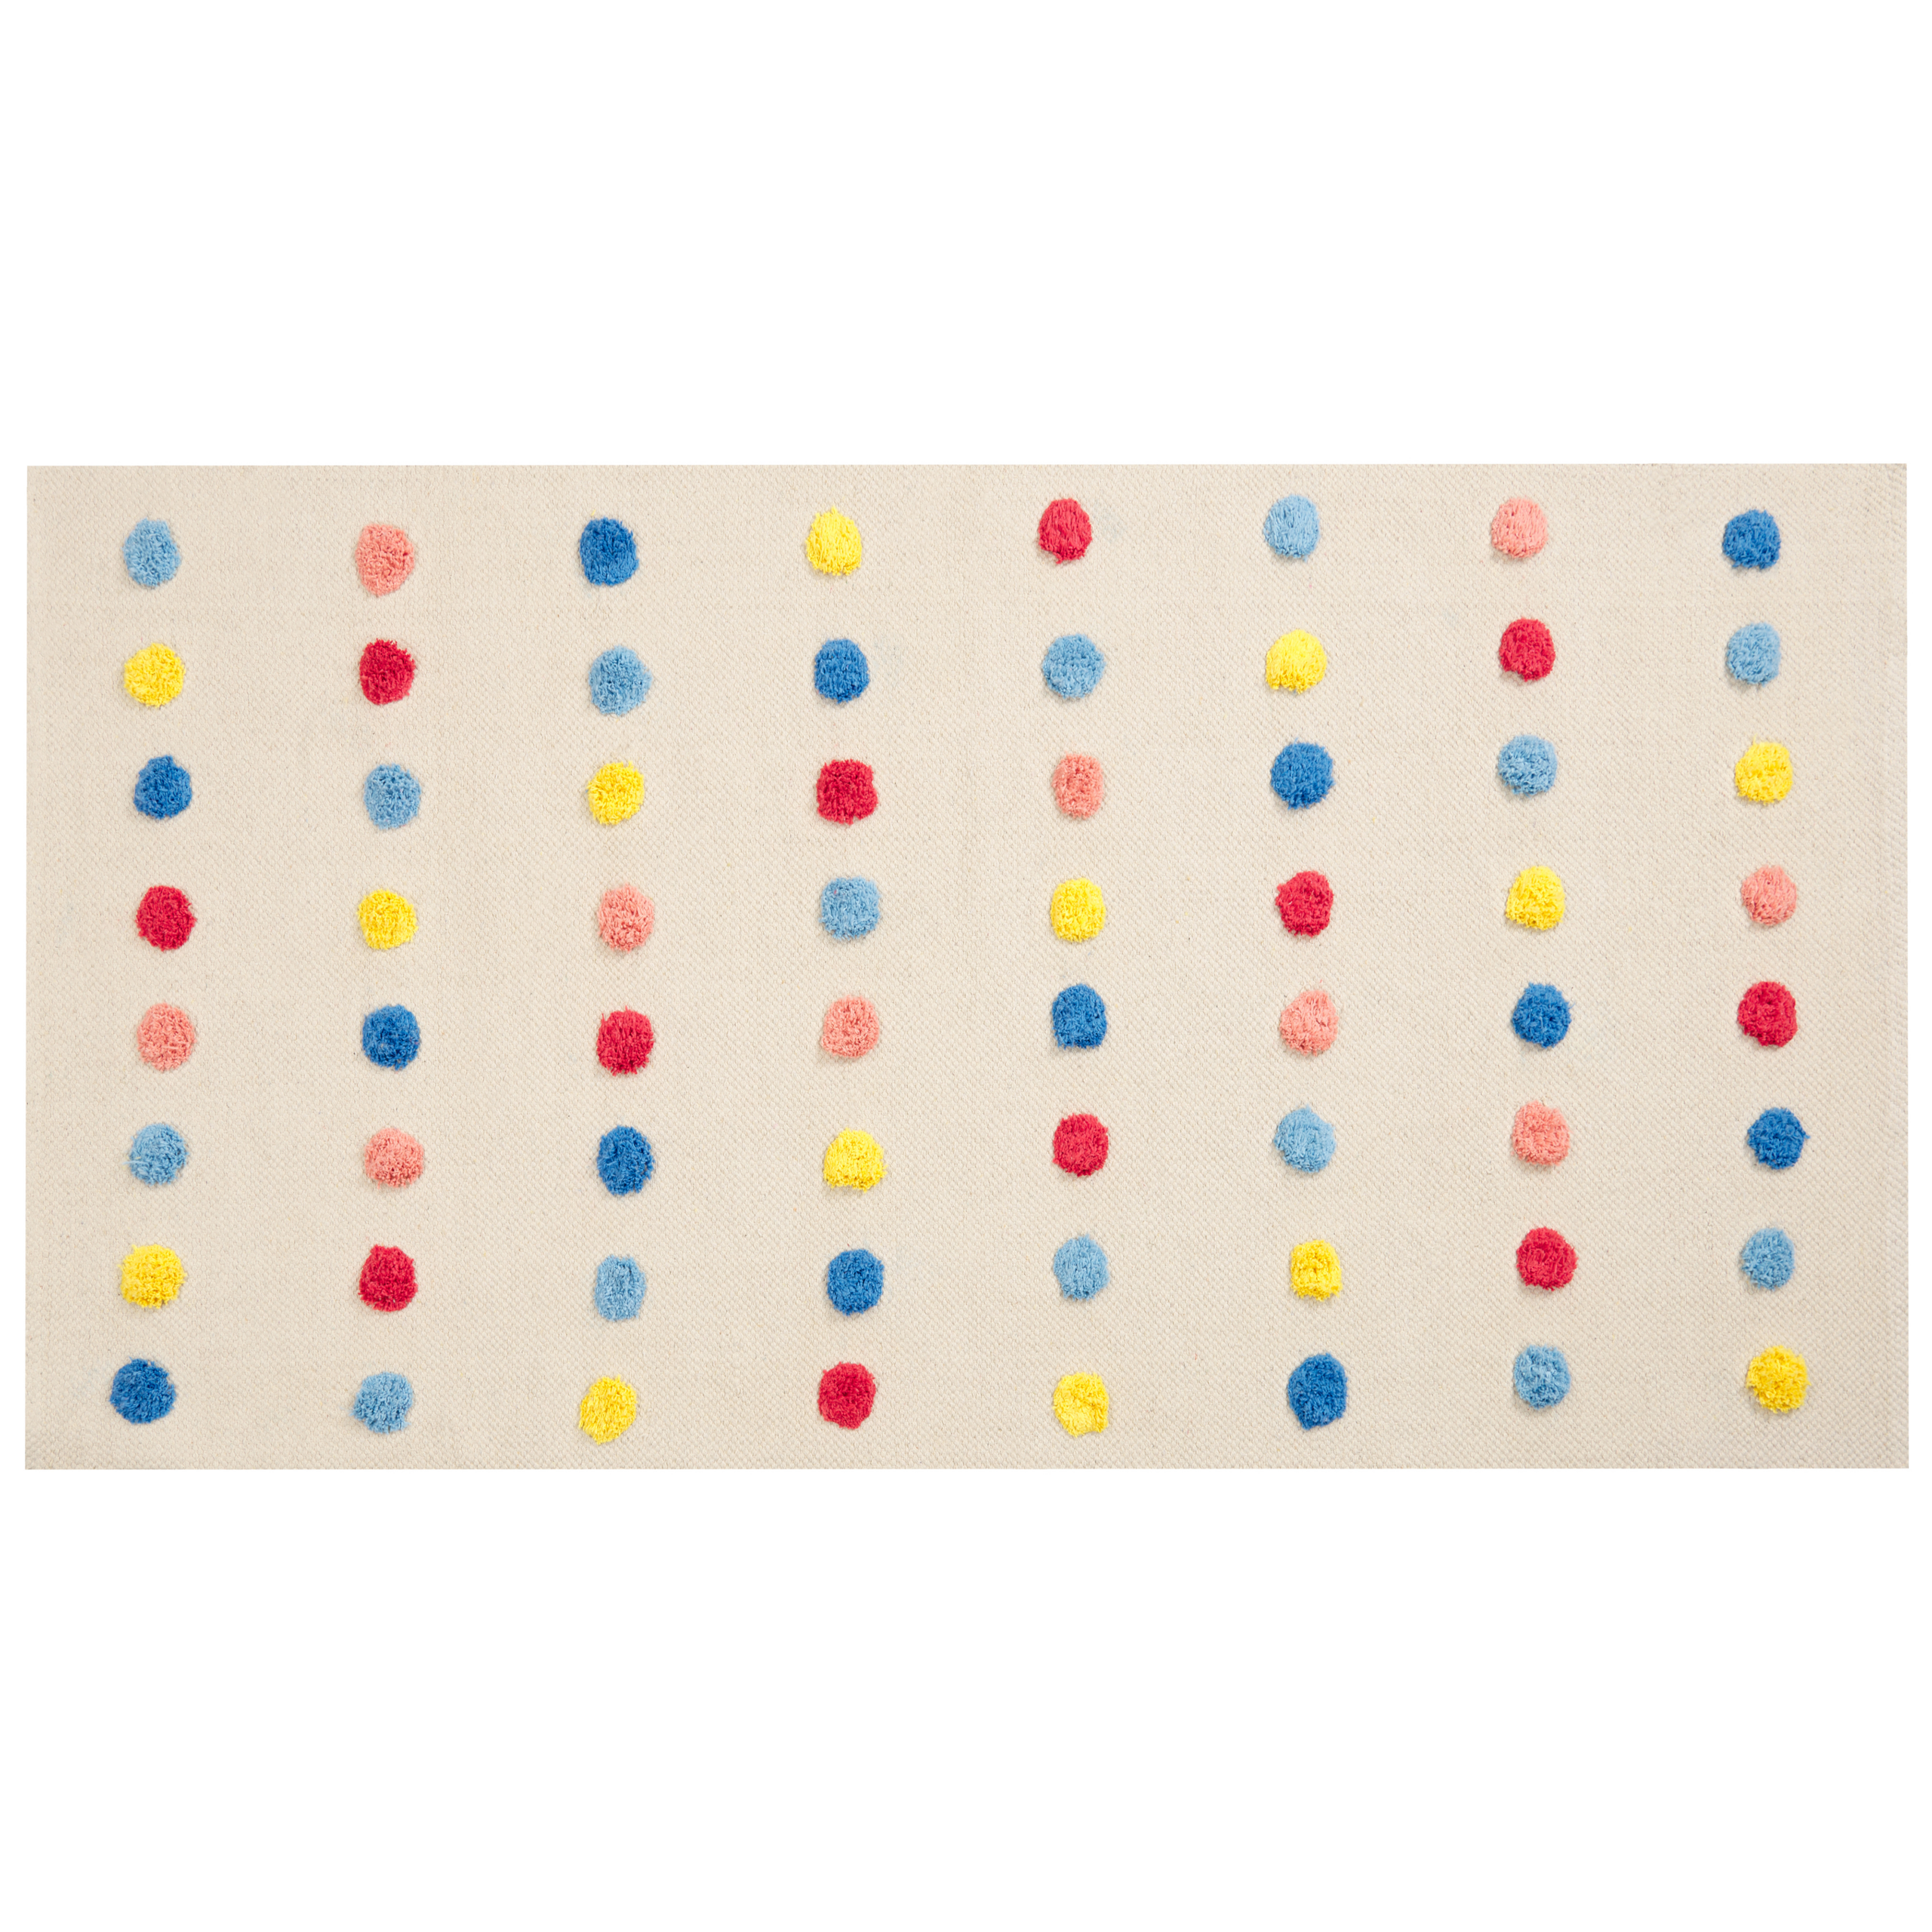 Beliani Tappeto per aree multicolore con mini pompon 80 x 150 cm, a basso contenuto di Multicolore